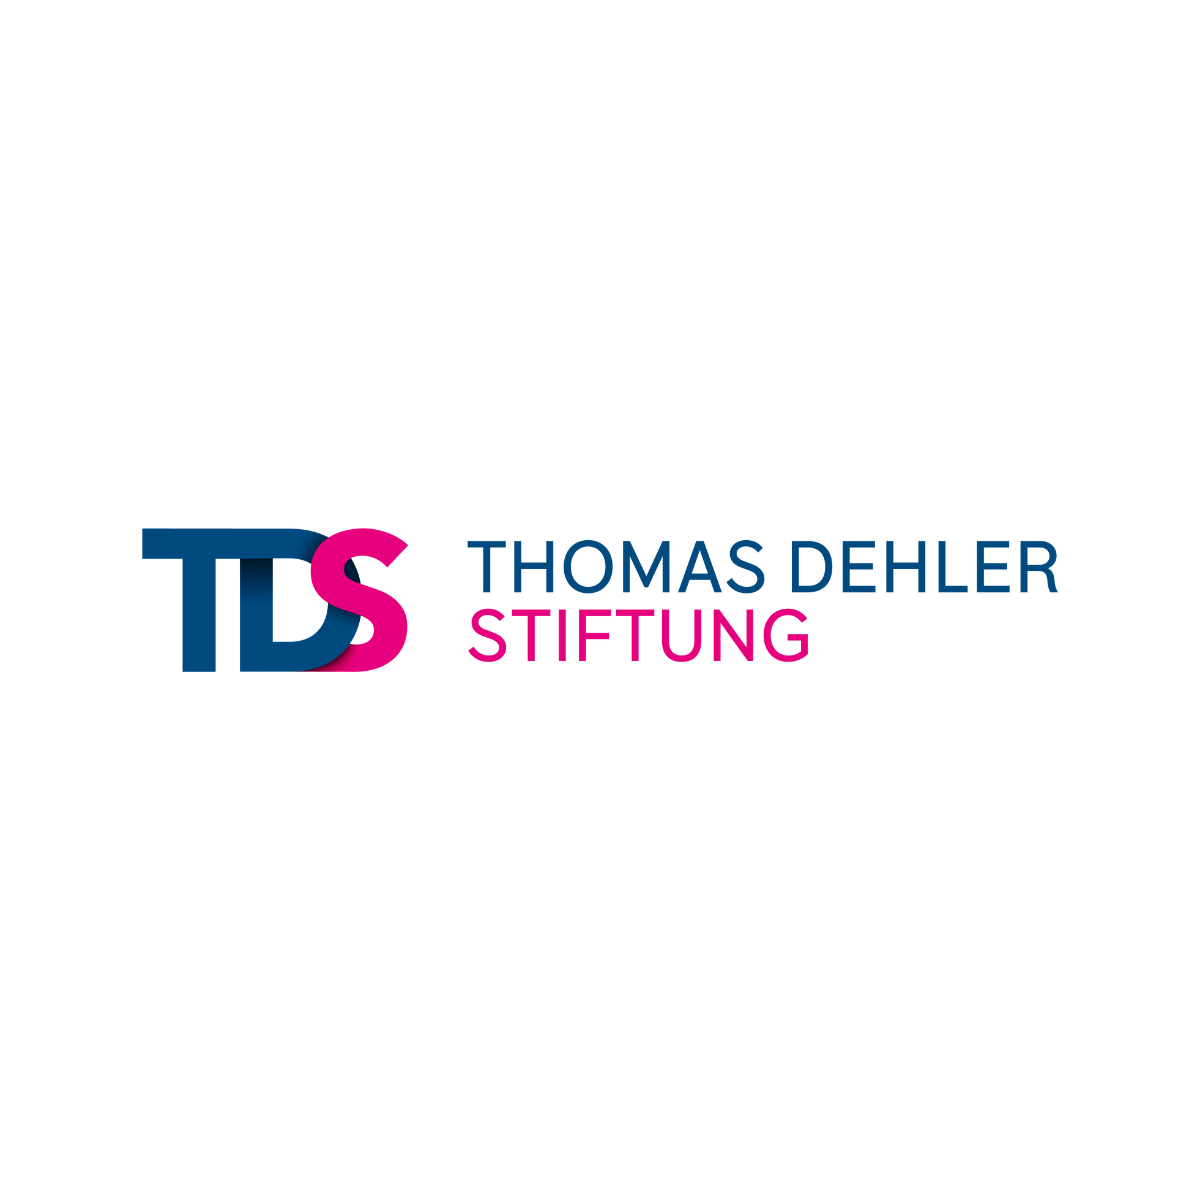 (c) Thomas-dehler-stiftung.de